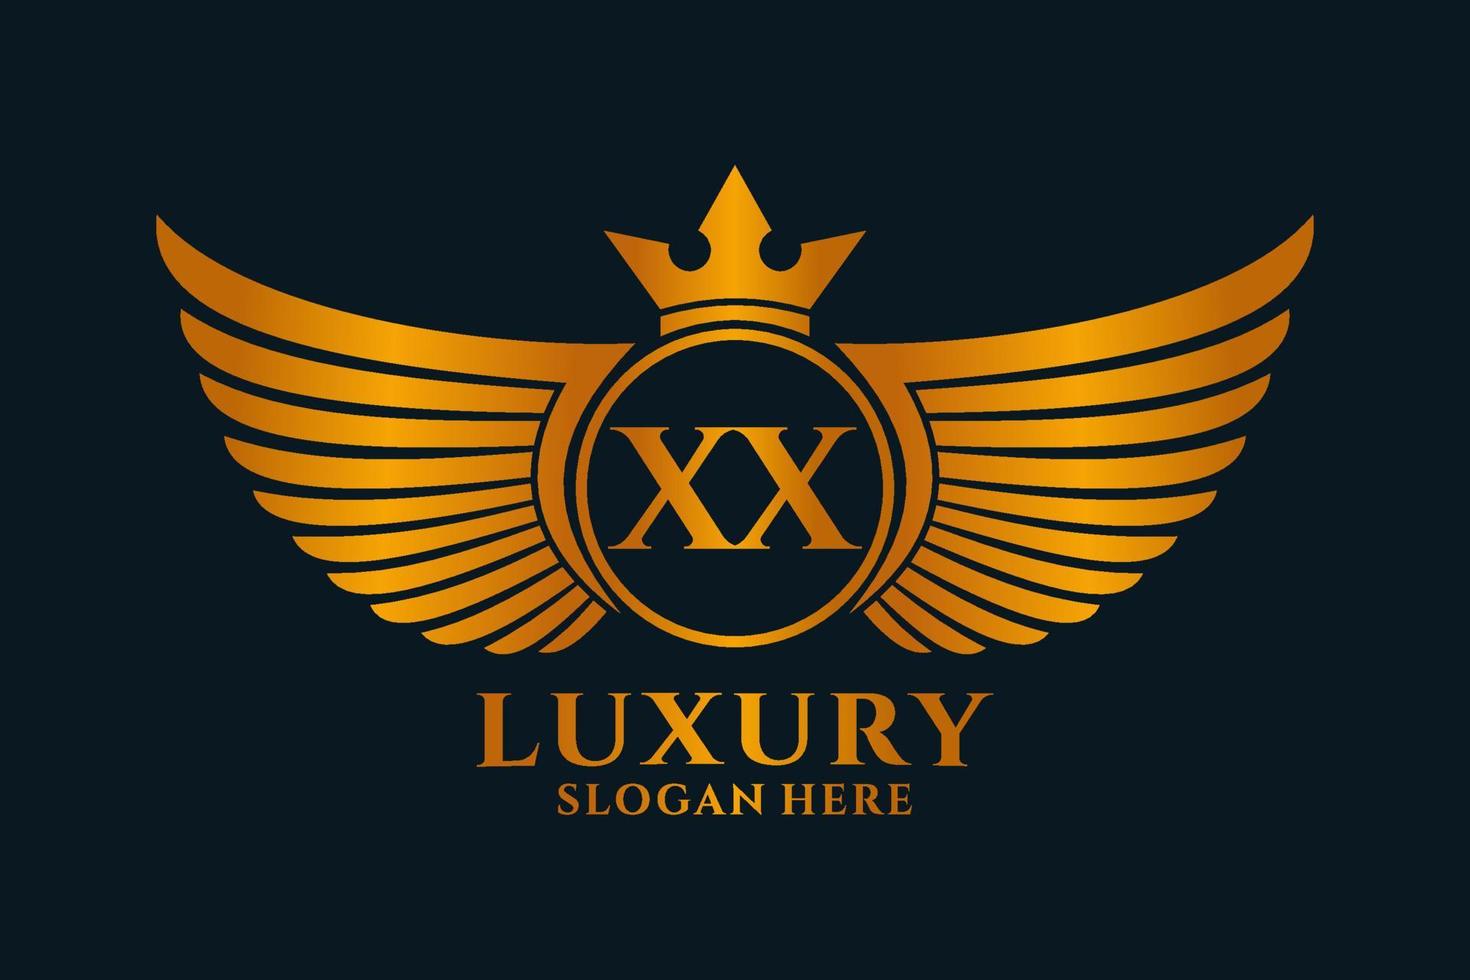 lusso reale ala lettera xx cresta oro colore logo vettore, vittoria logo, cresta logo, ala logo, vettore logo modello.